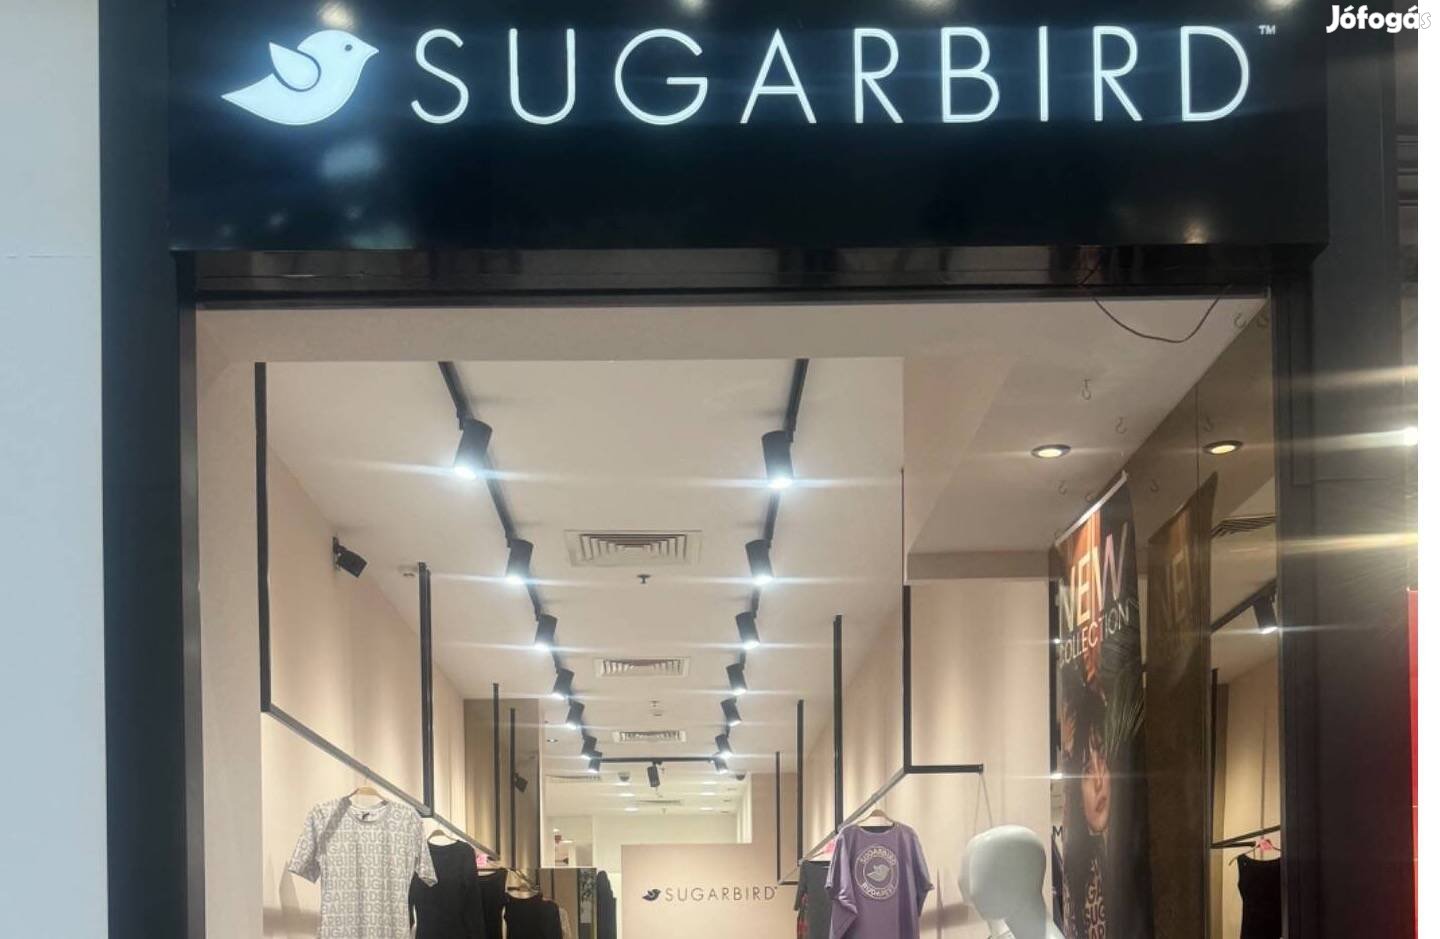 Eladó nyíregyházi Sugarbird üzlet franchise joga!!